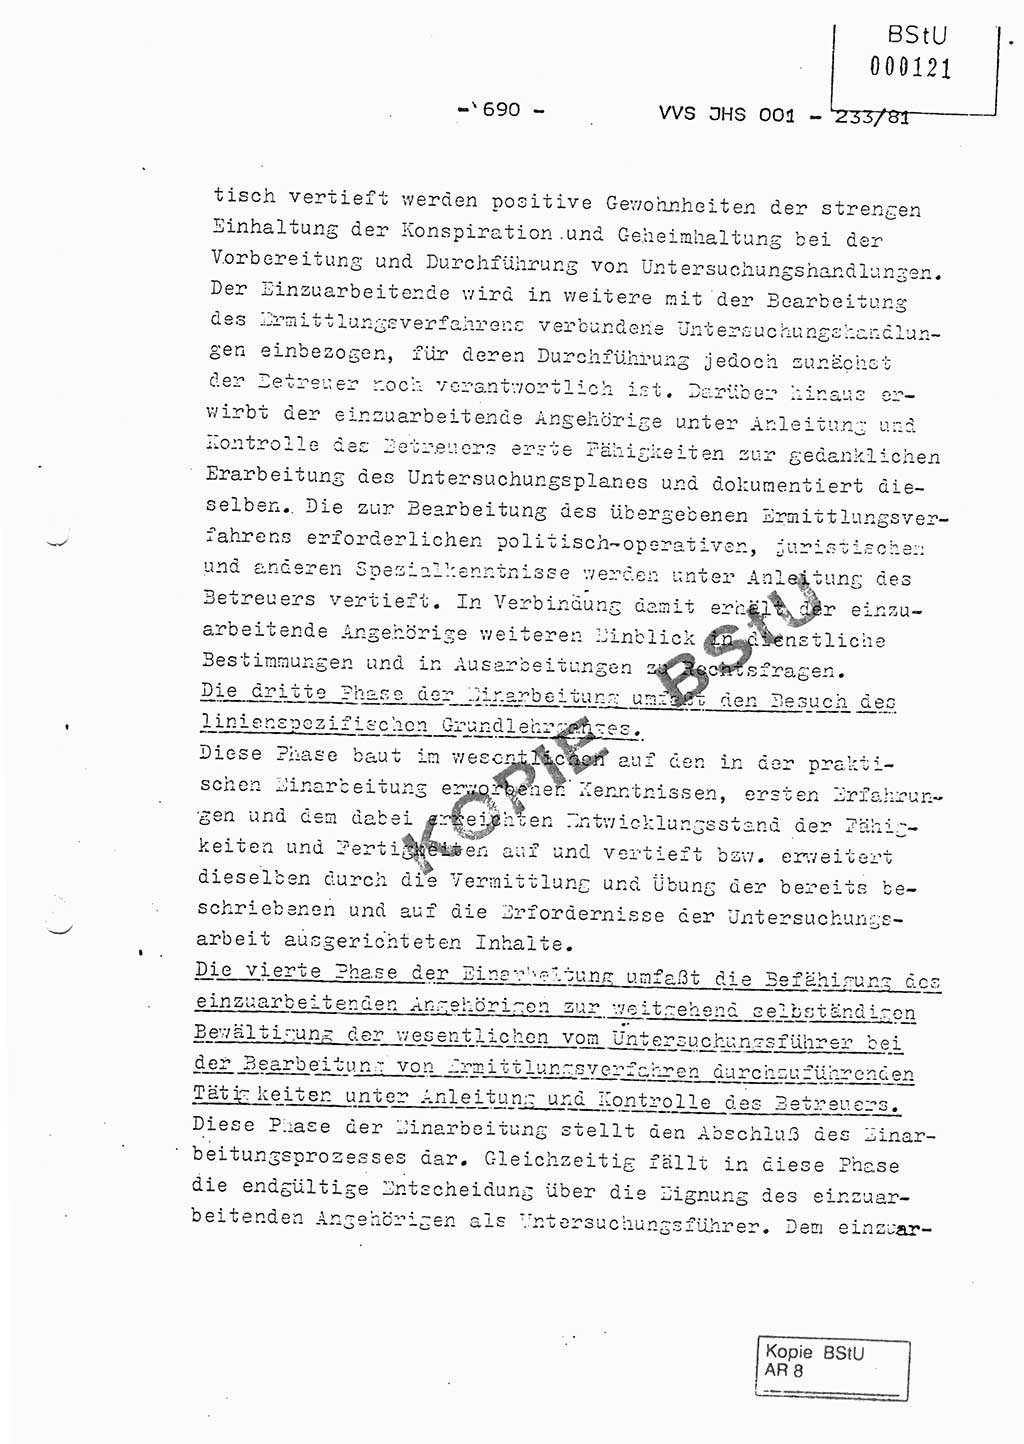 Dissertation Oberstleutnant Horst Zank (JHS), Oberstleutnant Dr. Karl-Heinz Knoblauch (JHS), Oberstleutnant Gustav-Adolf Kowalewski (HA Ⅸ), Oberstleutnant Wolfgang Plötner (HA Ⅸ), Ministerium für Staatssicherheit (MfS) [Deutsche Demokratische Republik (DDR)], Juristische Hochschule (JHS), Vertrauliche Verschlußsache (VVS) o001-233/81, Potsdam 1981, Blatt 690 (Diss. MfS DDR JHS VVS o001-233/81 1981, Bl. 690)